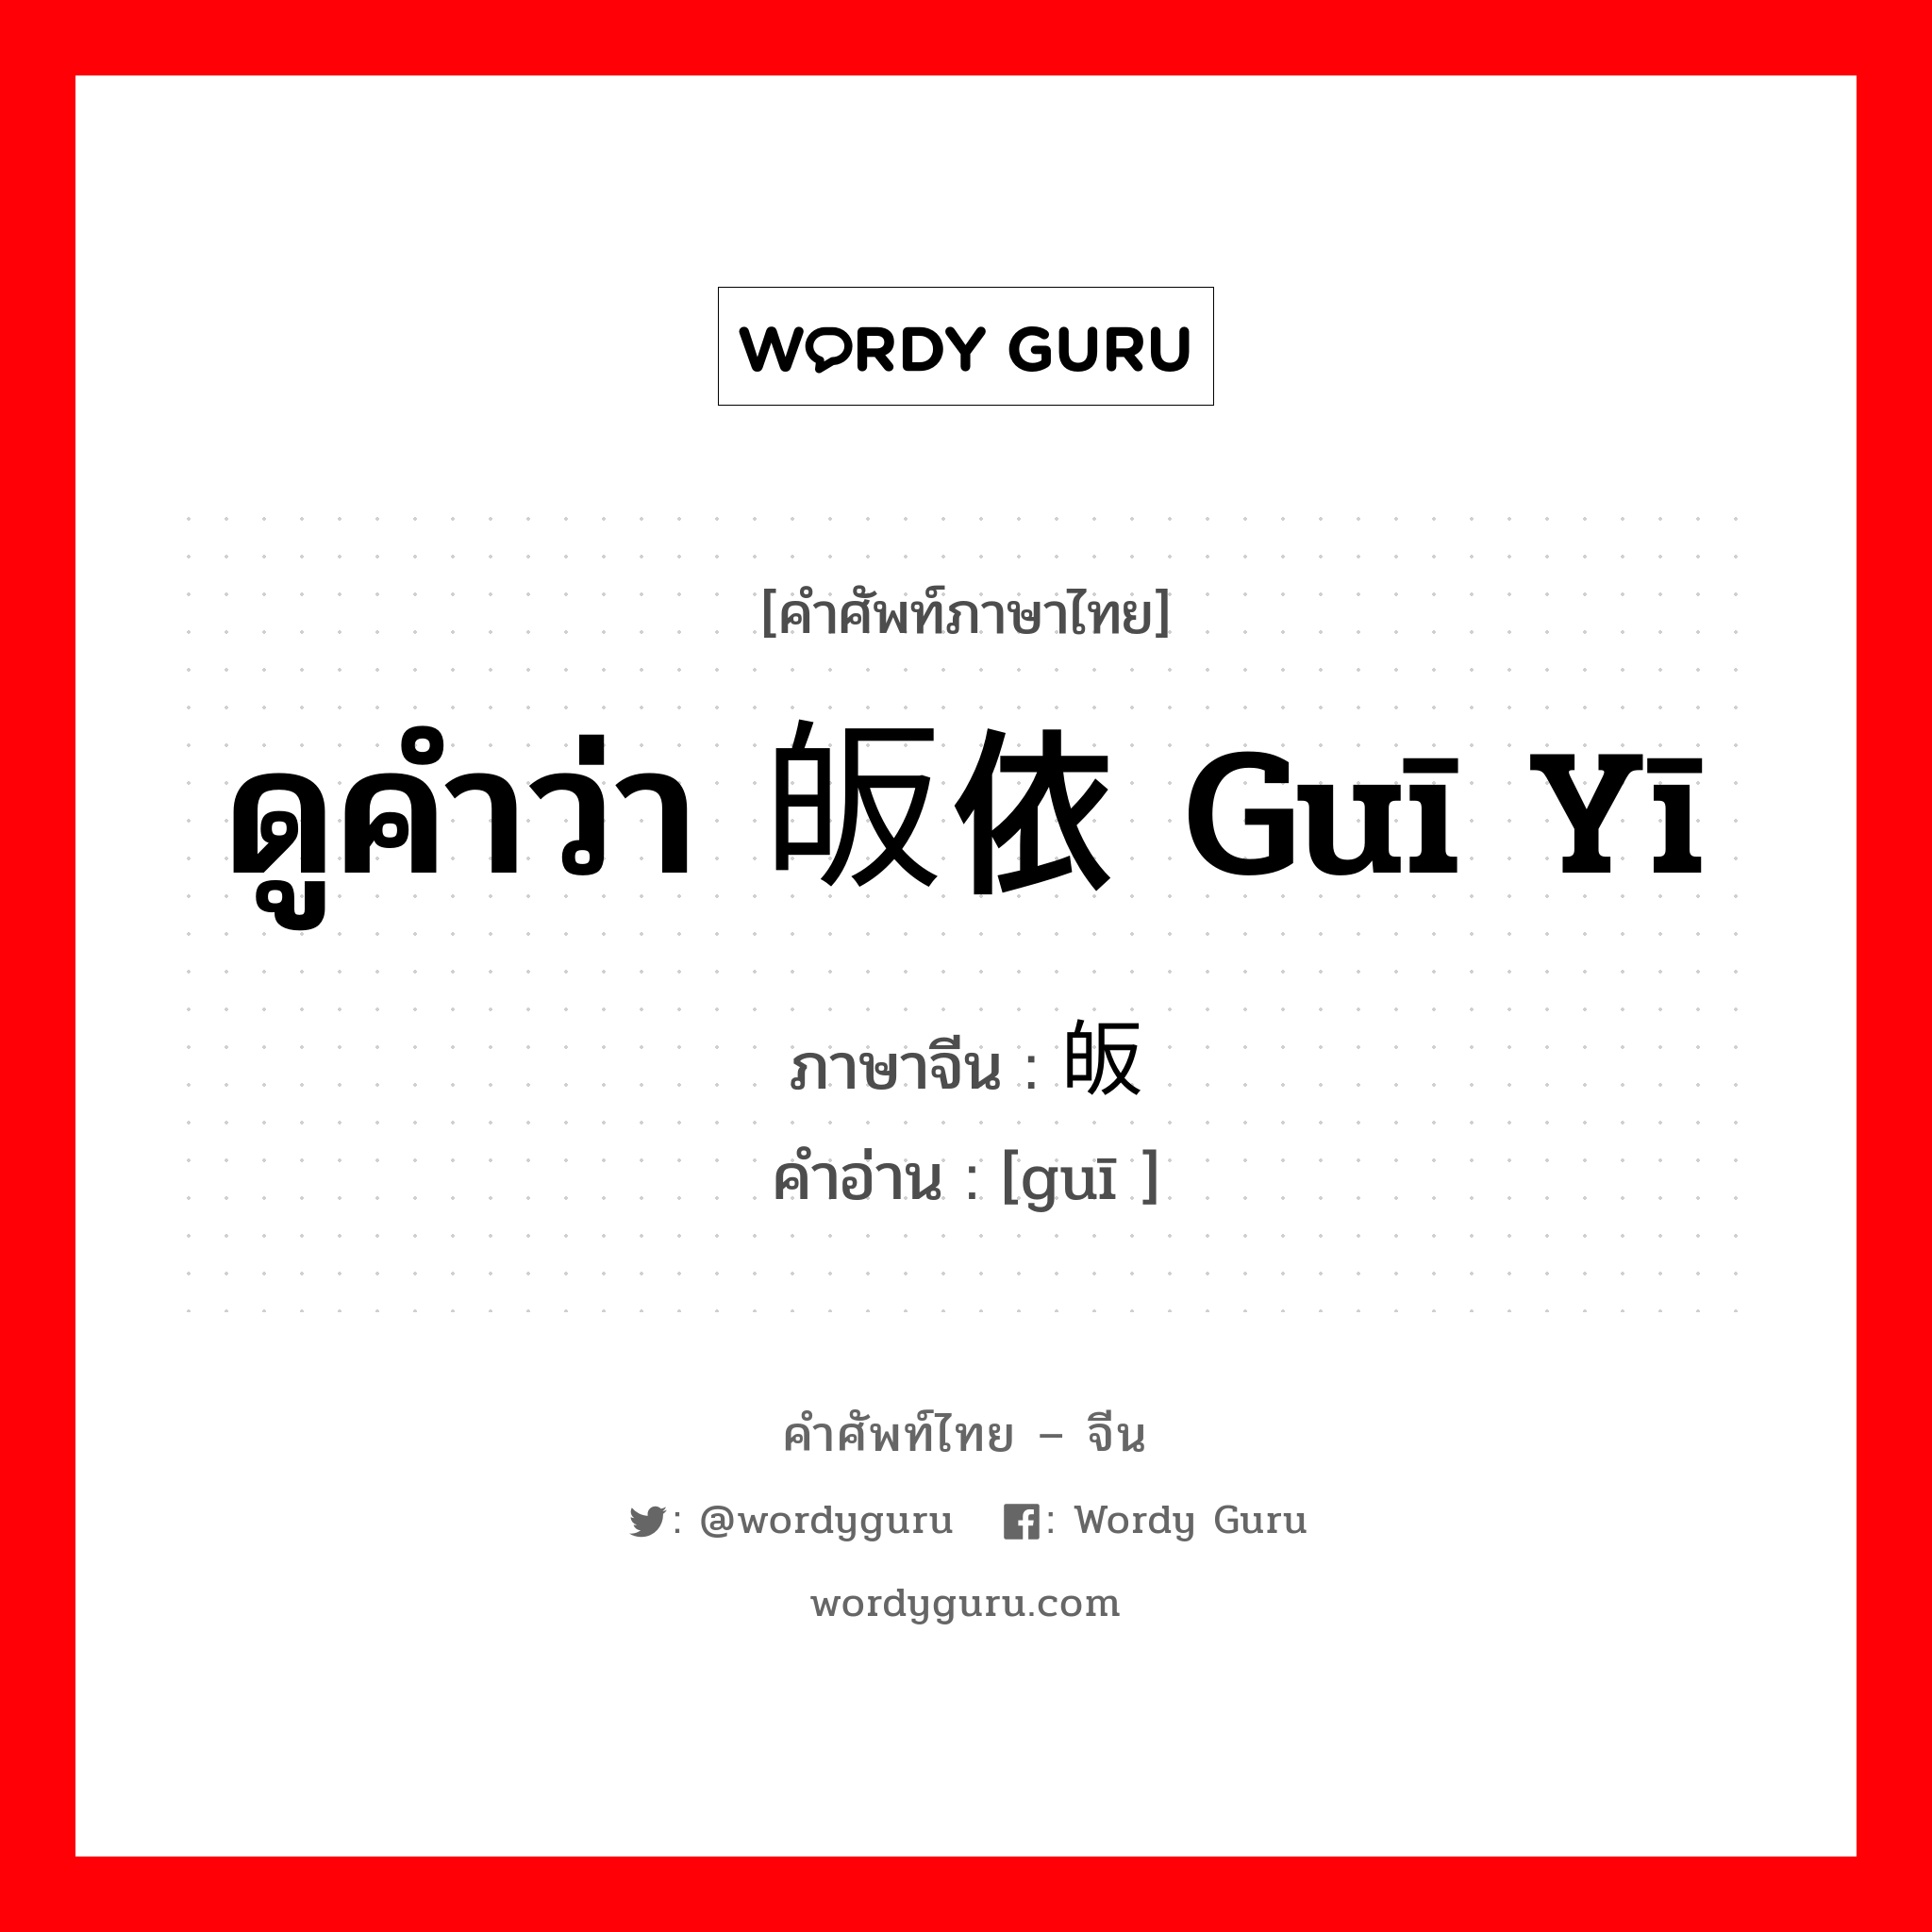 ดูคำว่า 皈依 guī yī ภาษาจีนคืออะไร, คำศัพท์ภาษาไทย - จีน ดูคำว่า 皈依 guī yī ภาษาจีน 皈 คำอ่าน [guī ]